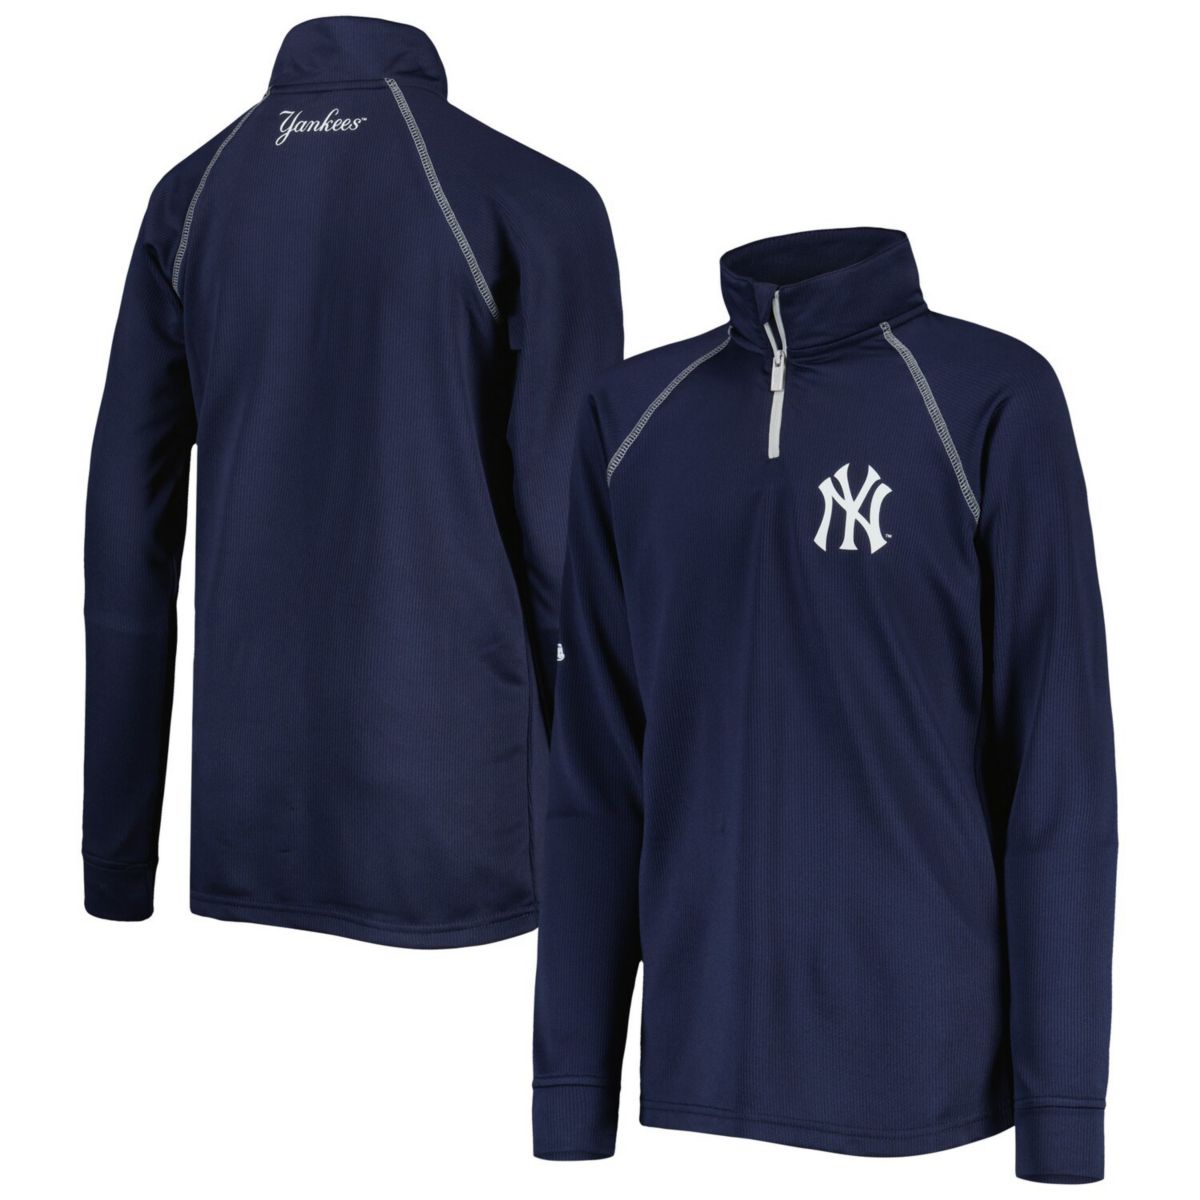 Темно-синяя куртка Youth Stitches New York Yankees Team с регланами и молнией на четверть Stitches